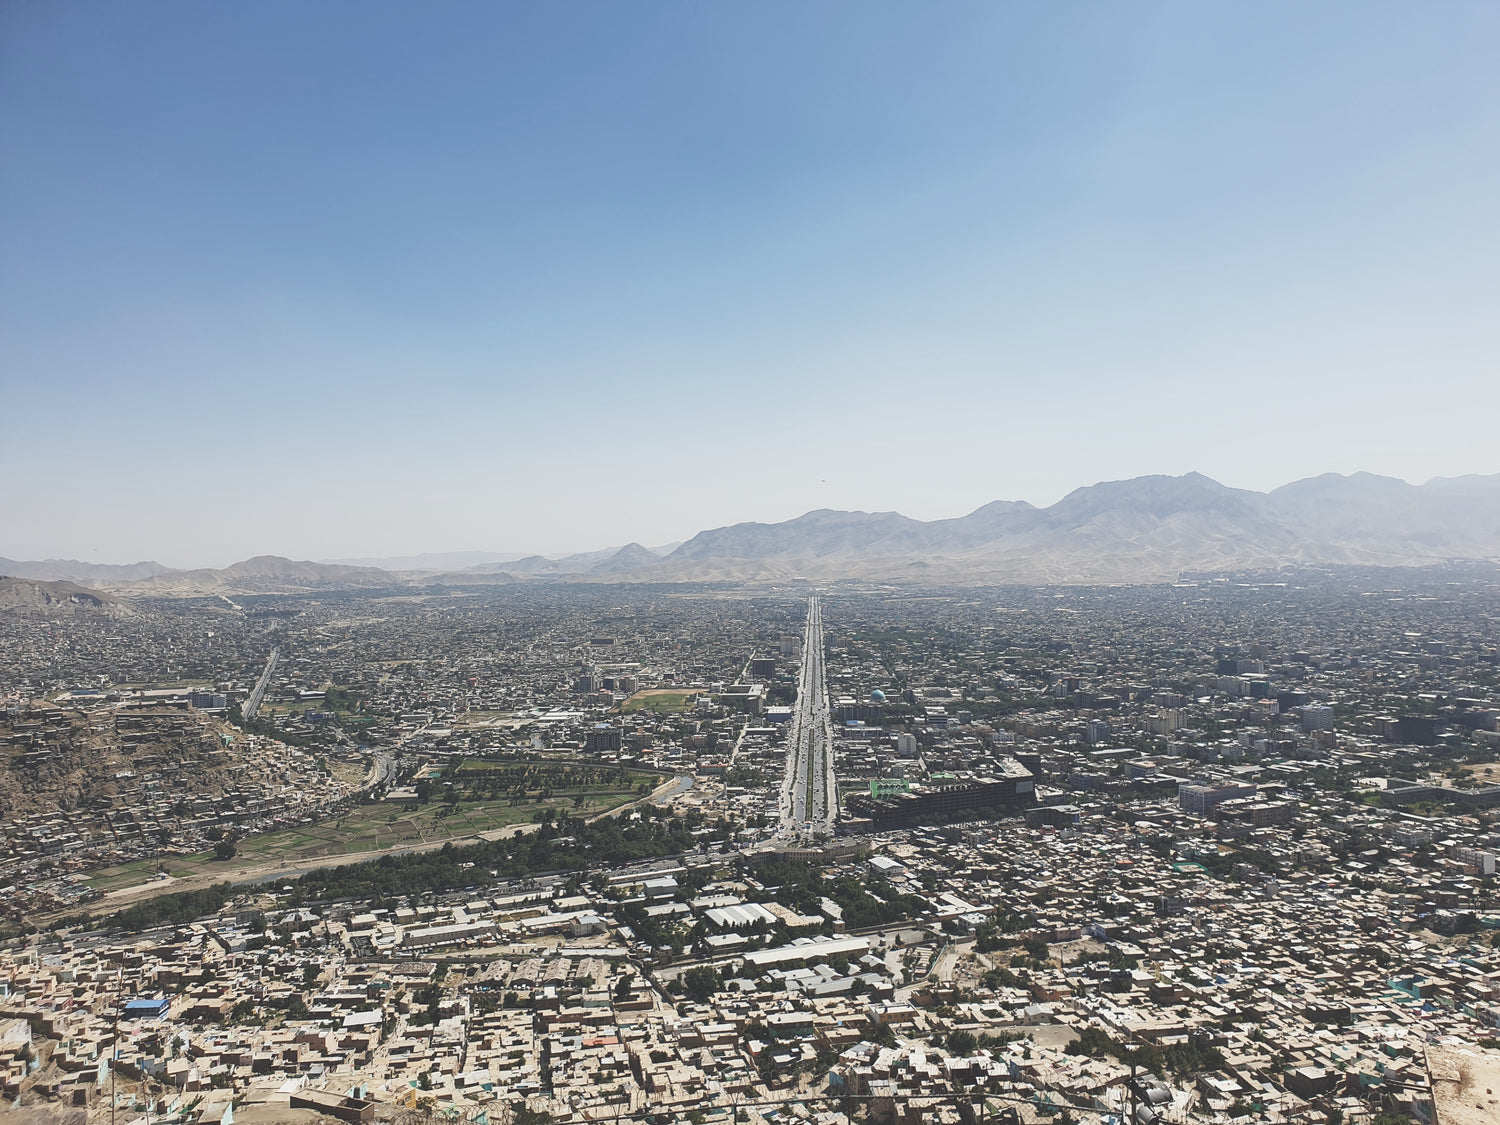 Патч «Work&Travel Kabul» В ПВХ PSDinfo®